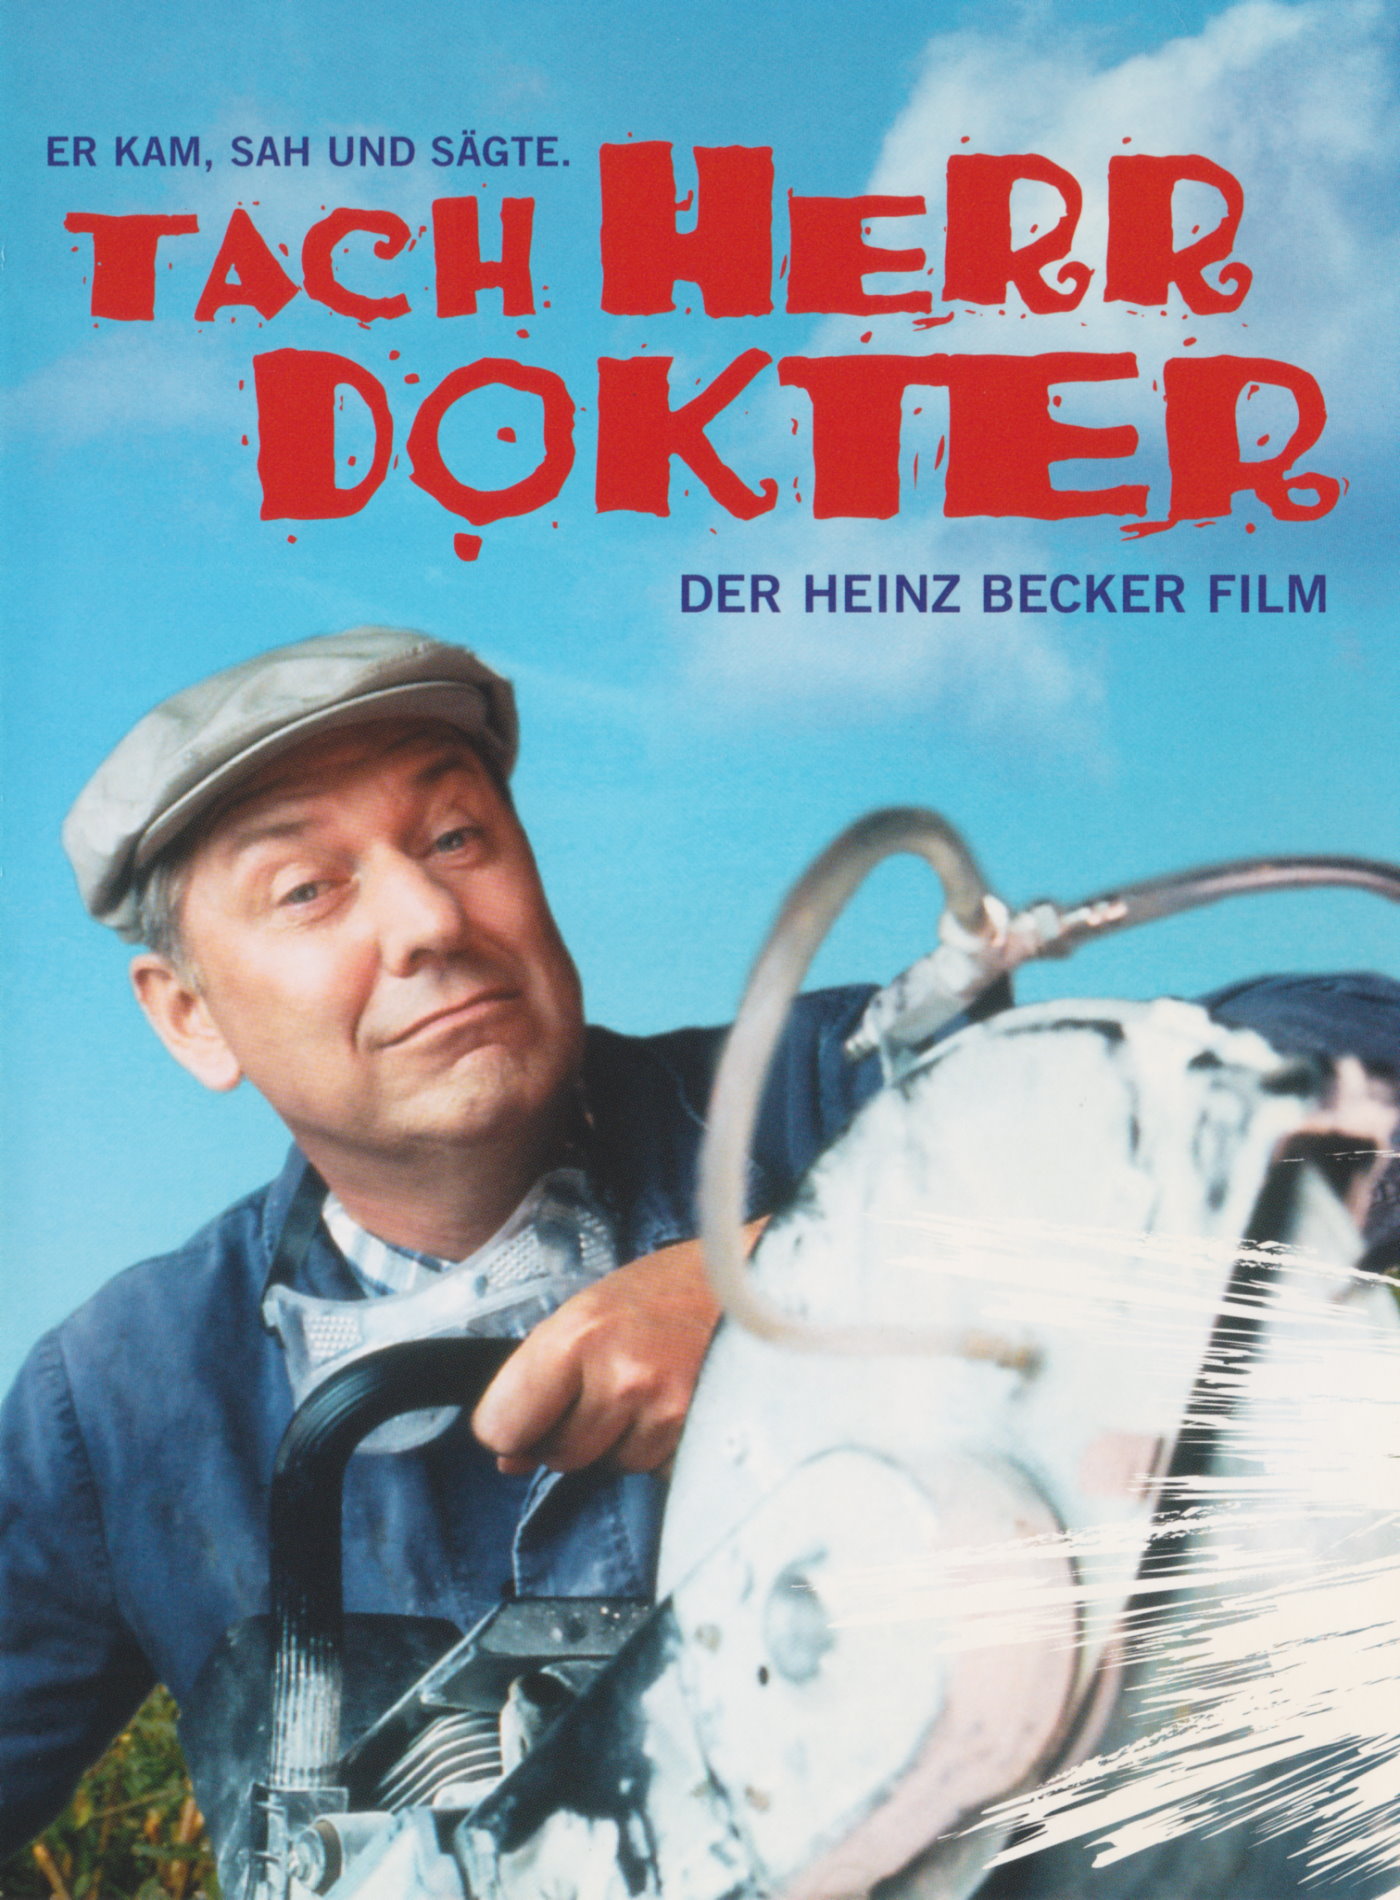 Cover - Tach Herr Dokter - Der Heinz Becker Film.jpg